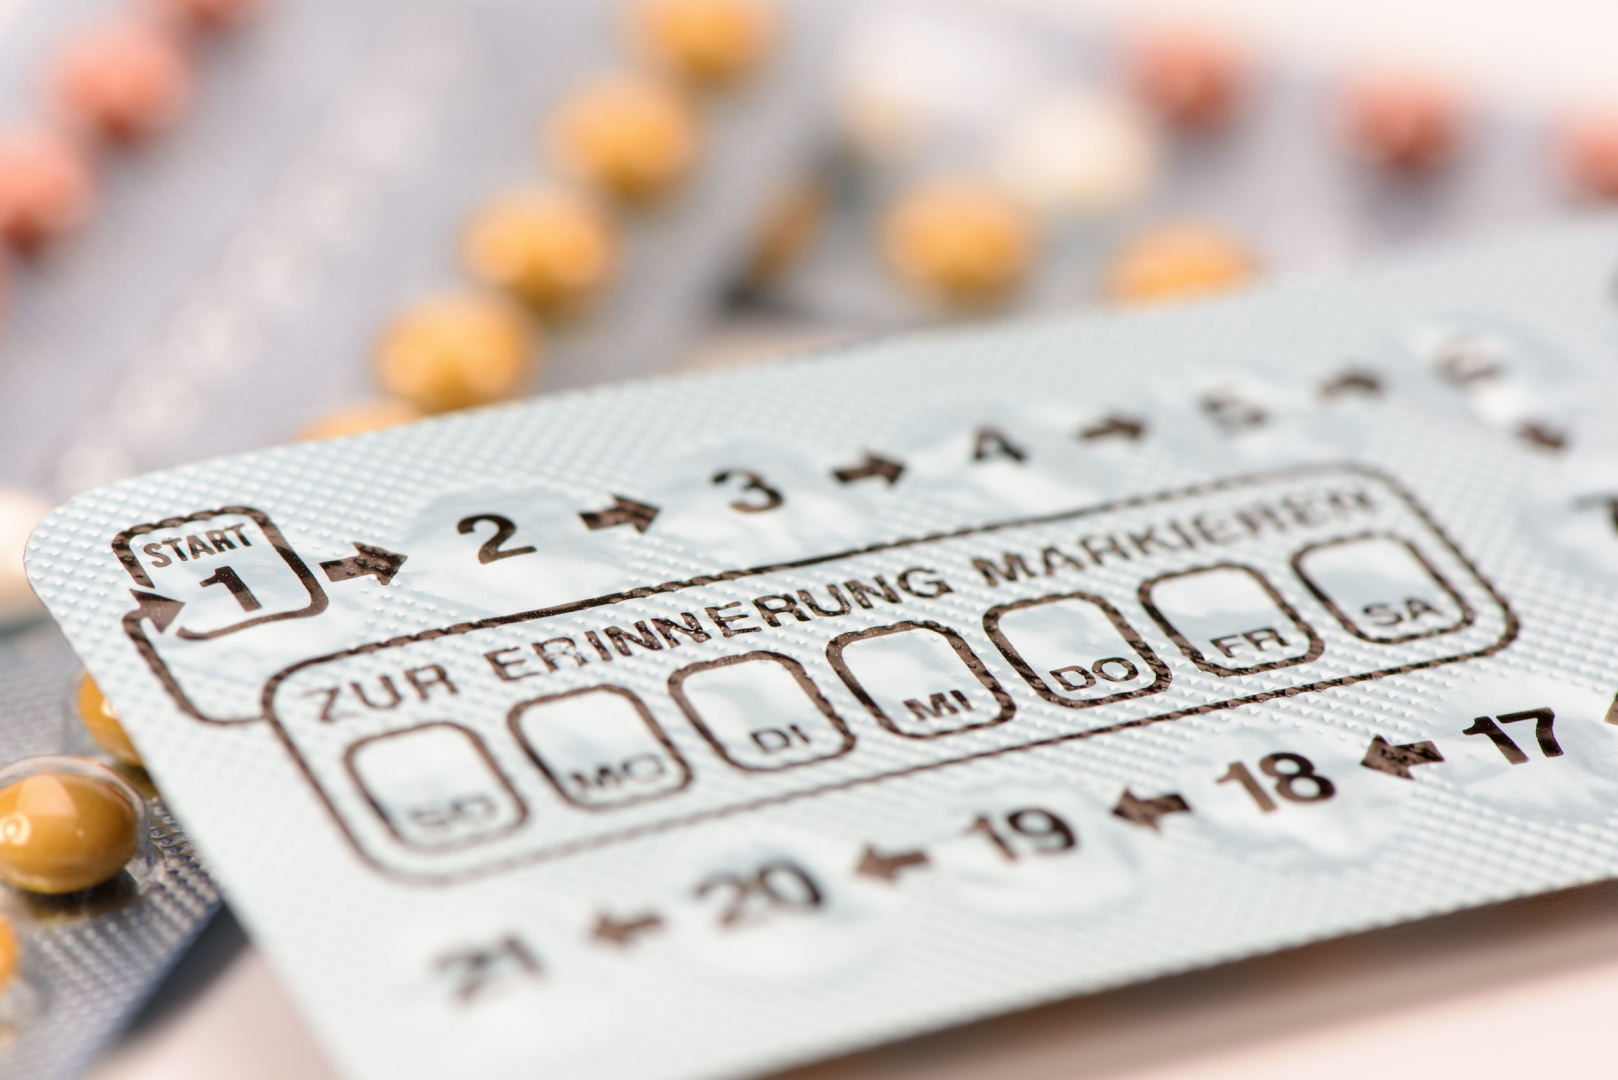 riebalų deginimo ir pilulės kontraceptinės priemonės 2 savaites deginti riebalus